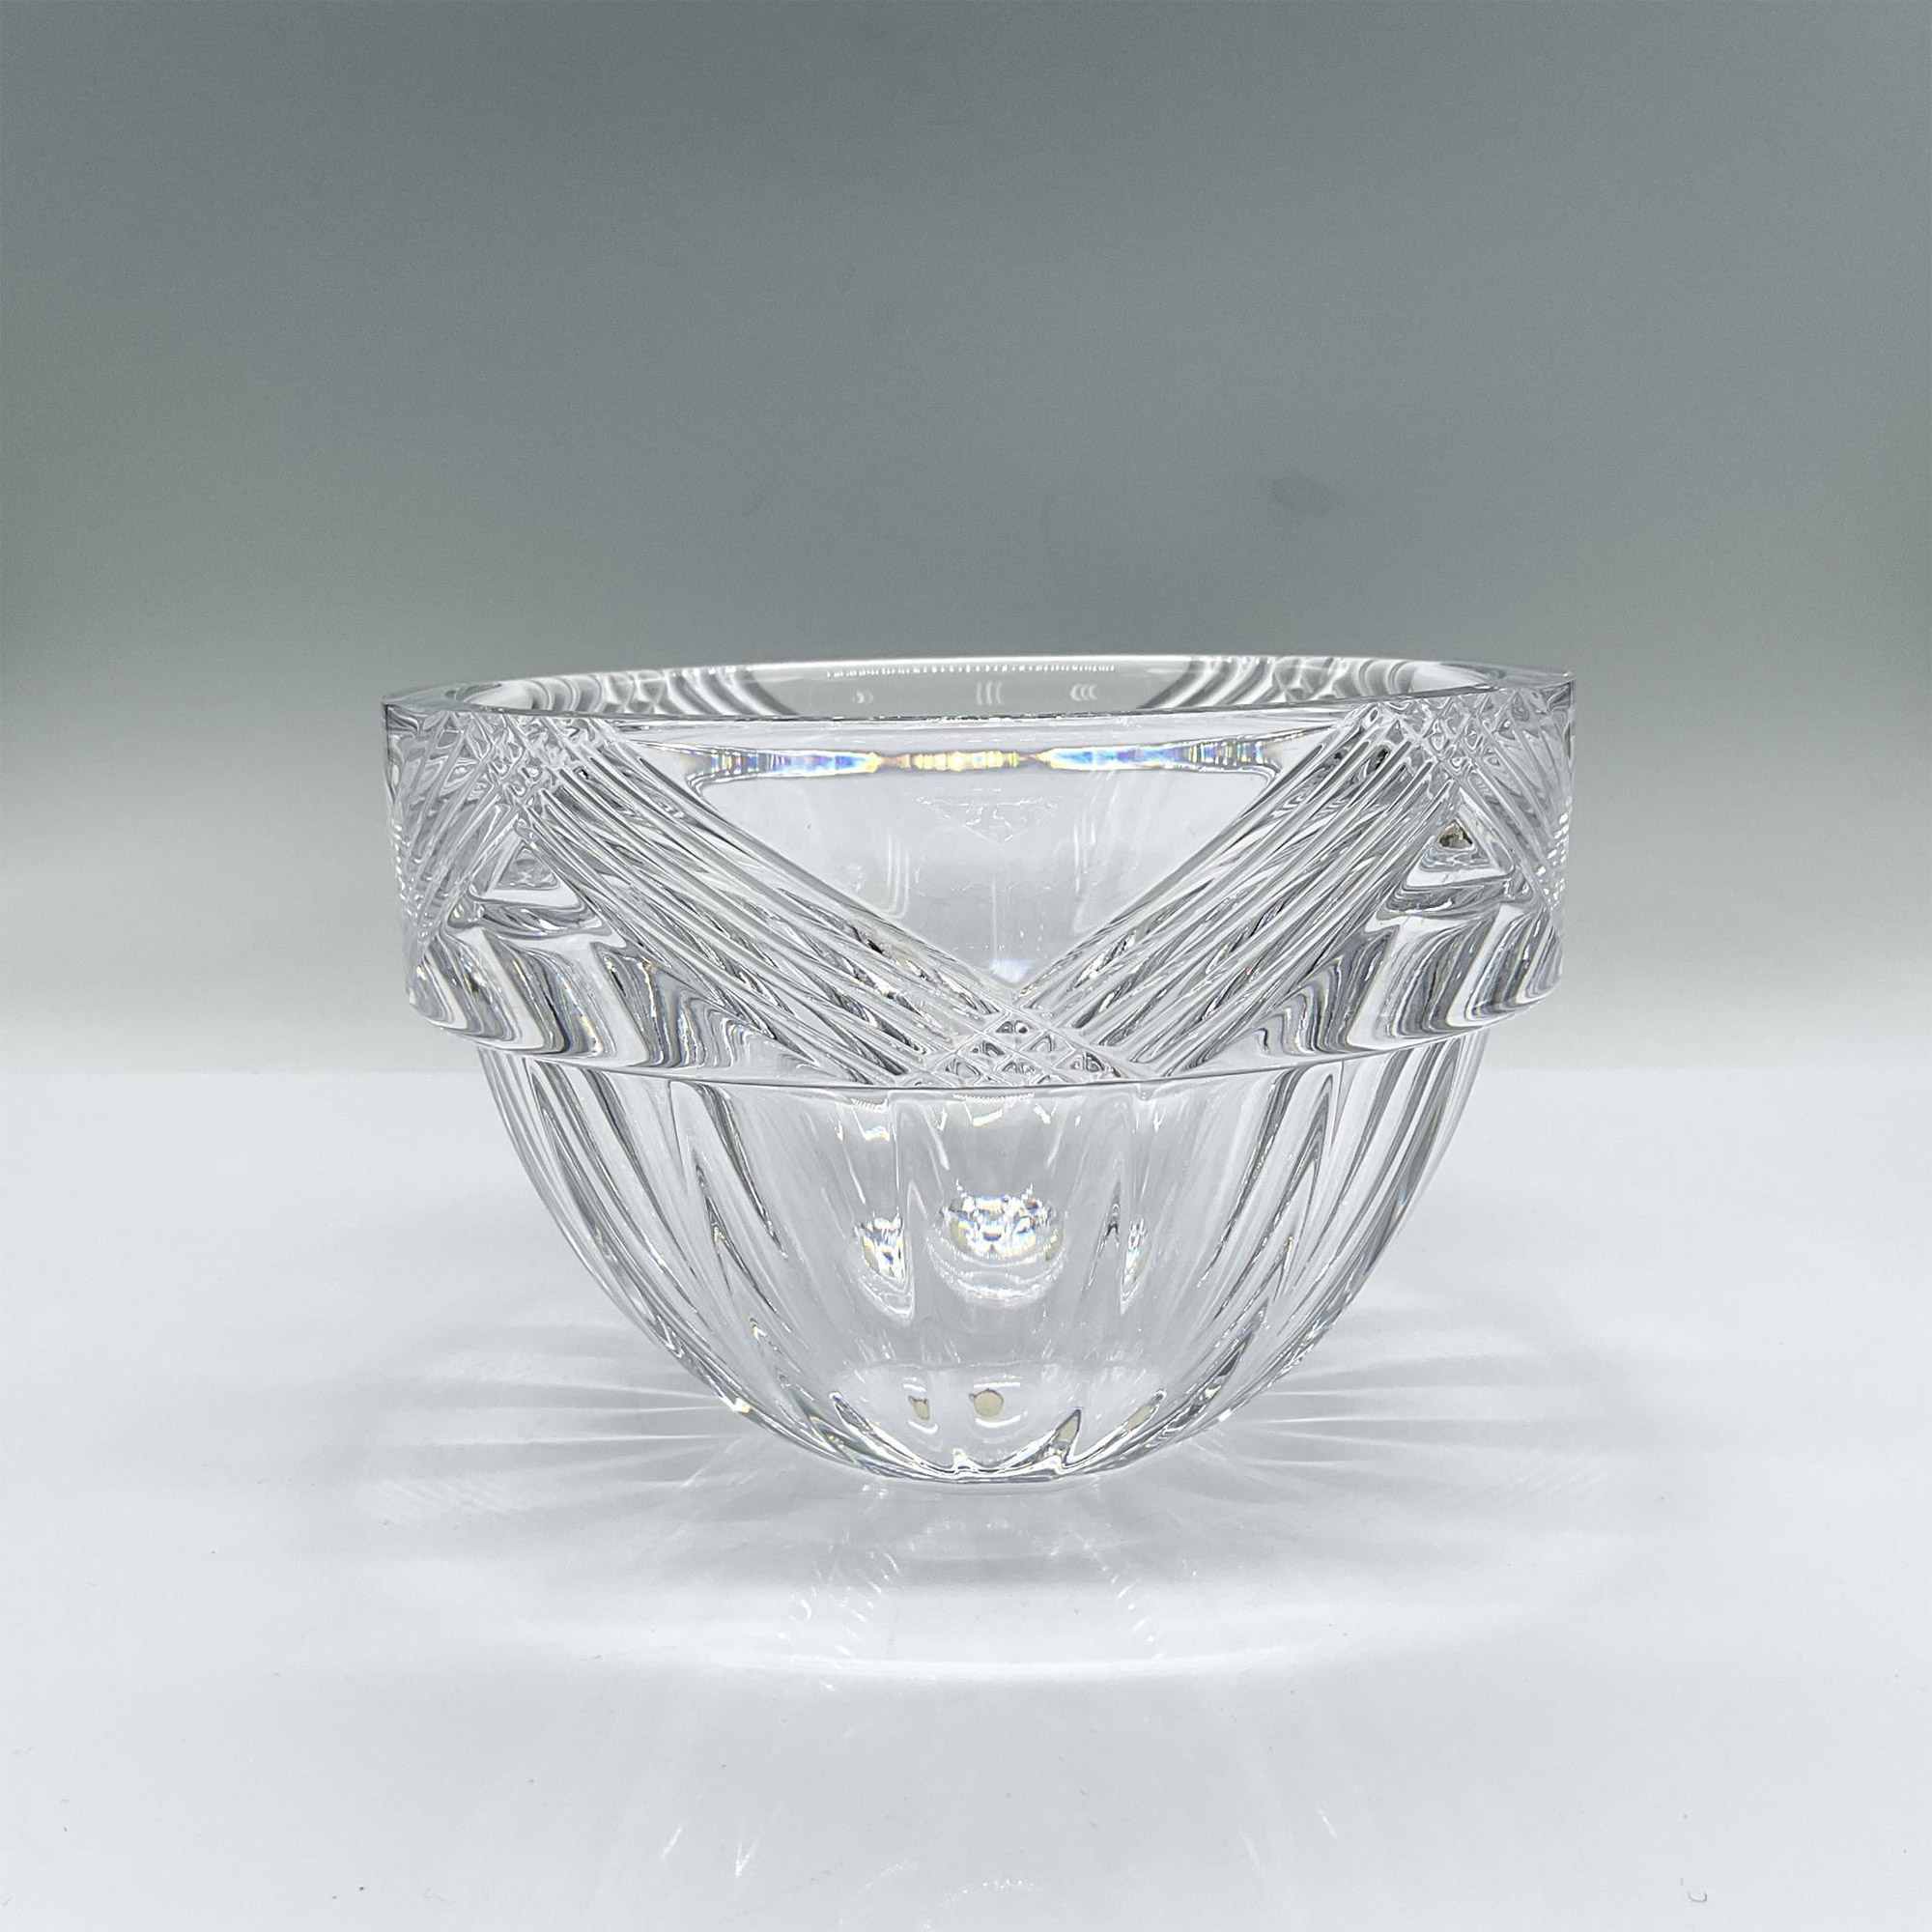 Orrefors Crystal Bowl by Erika Lagerbielke